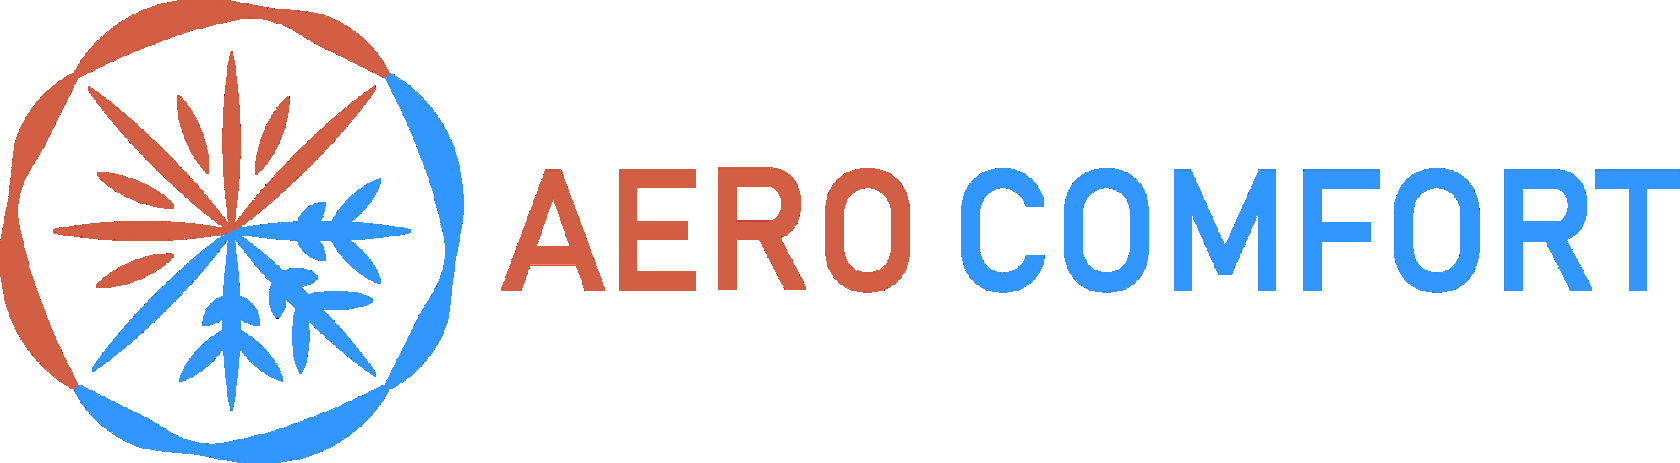 Официальный сайт Aero Comfort в 